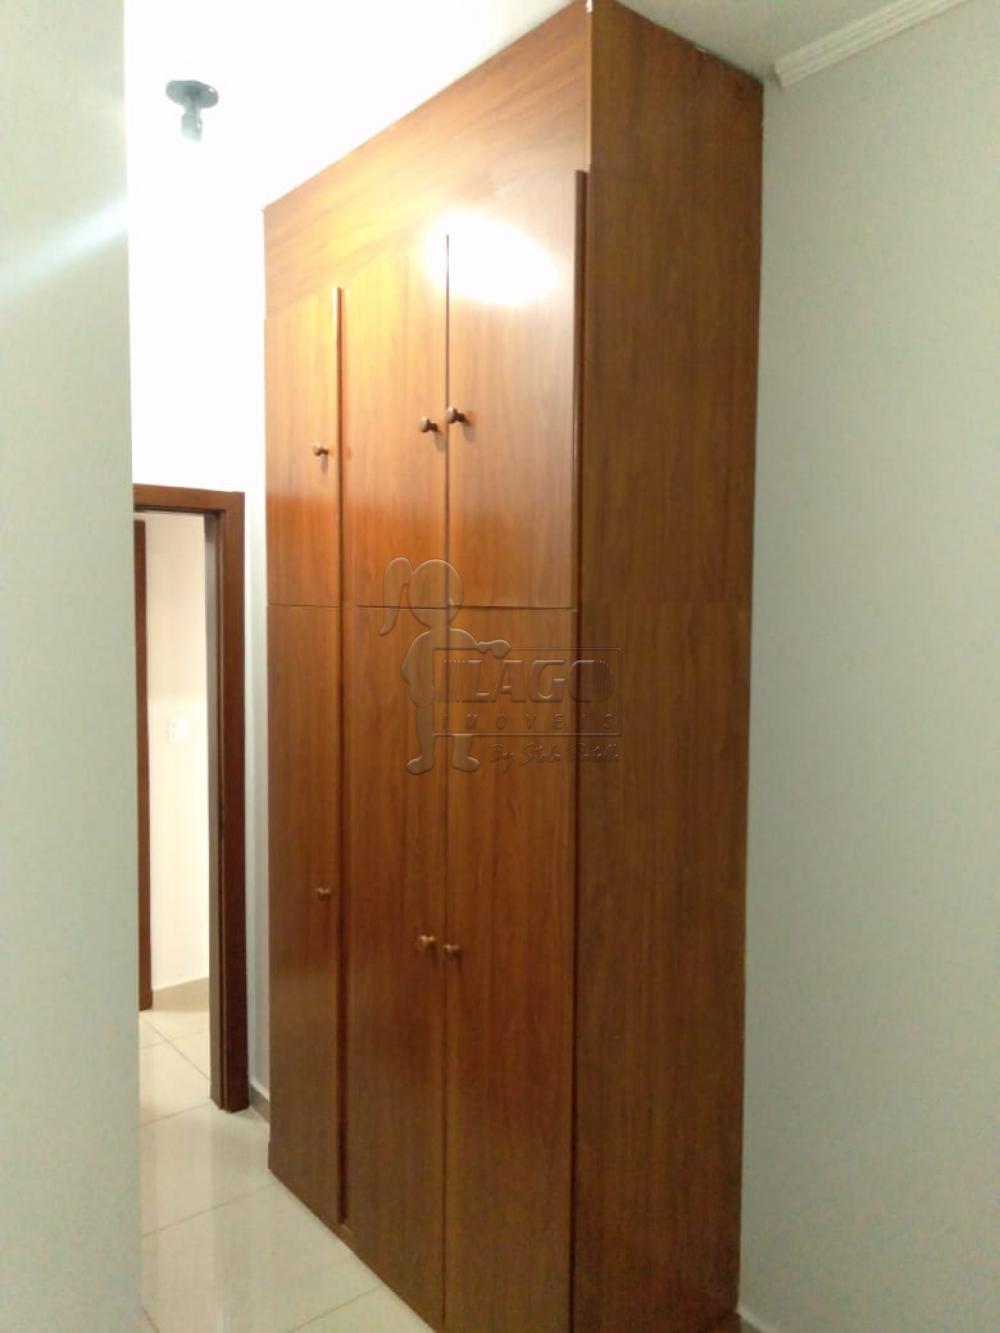 Alugar Apartamento / Padrão em Ribeirão Preto R$ 2.500,00 - Foto 8